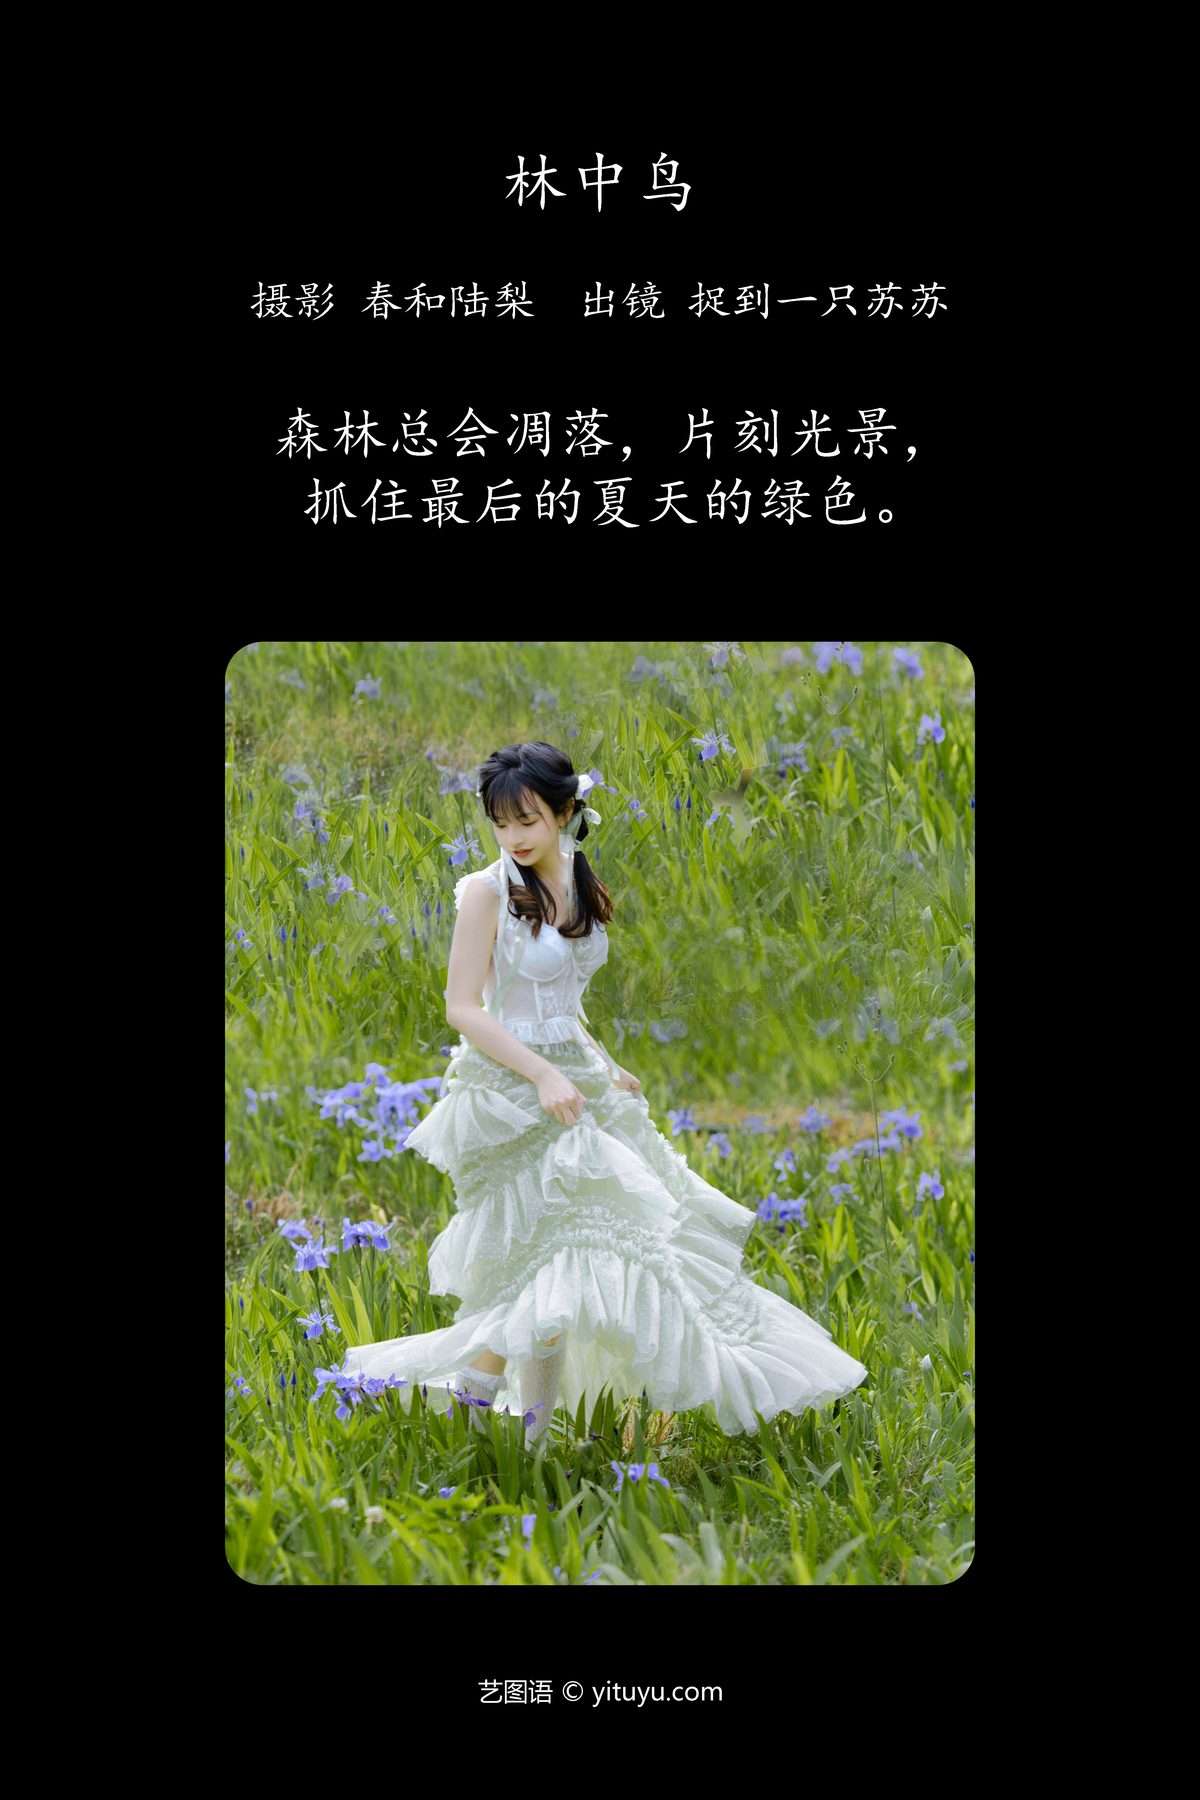 YiTuYu艺图语 Vol 5217 Zhuo Dao Yi Zhi Su Su 0001 4097592472.jpg